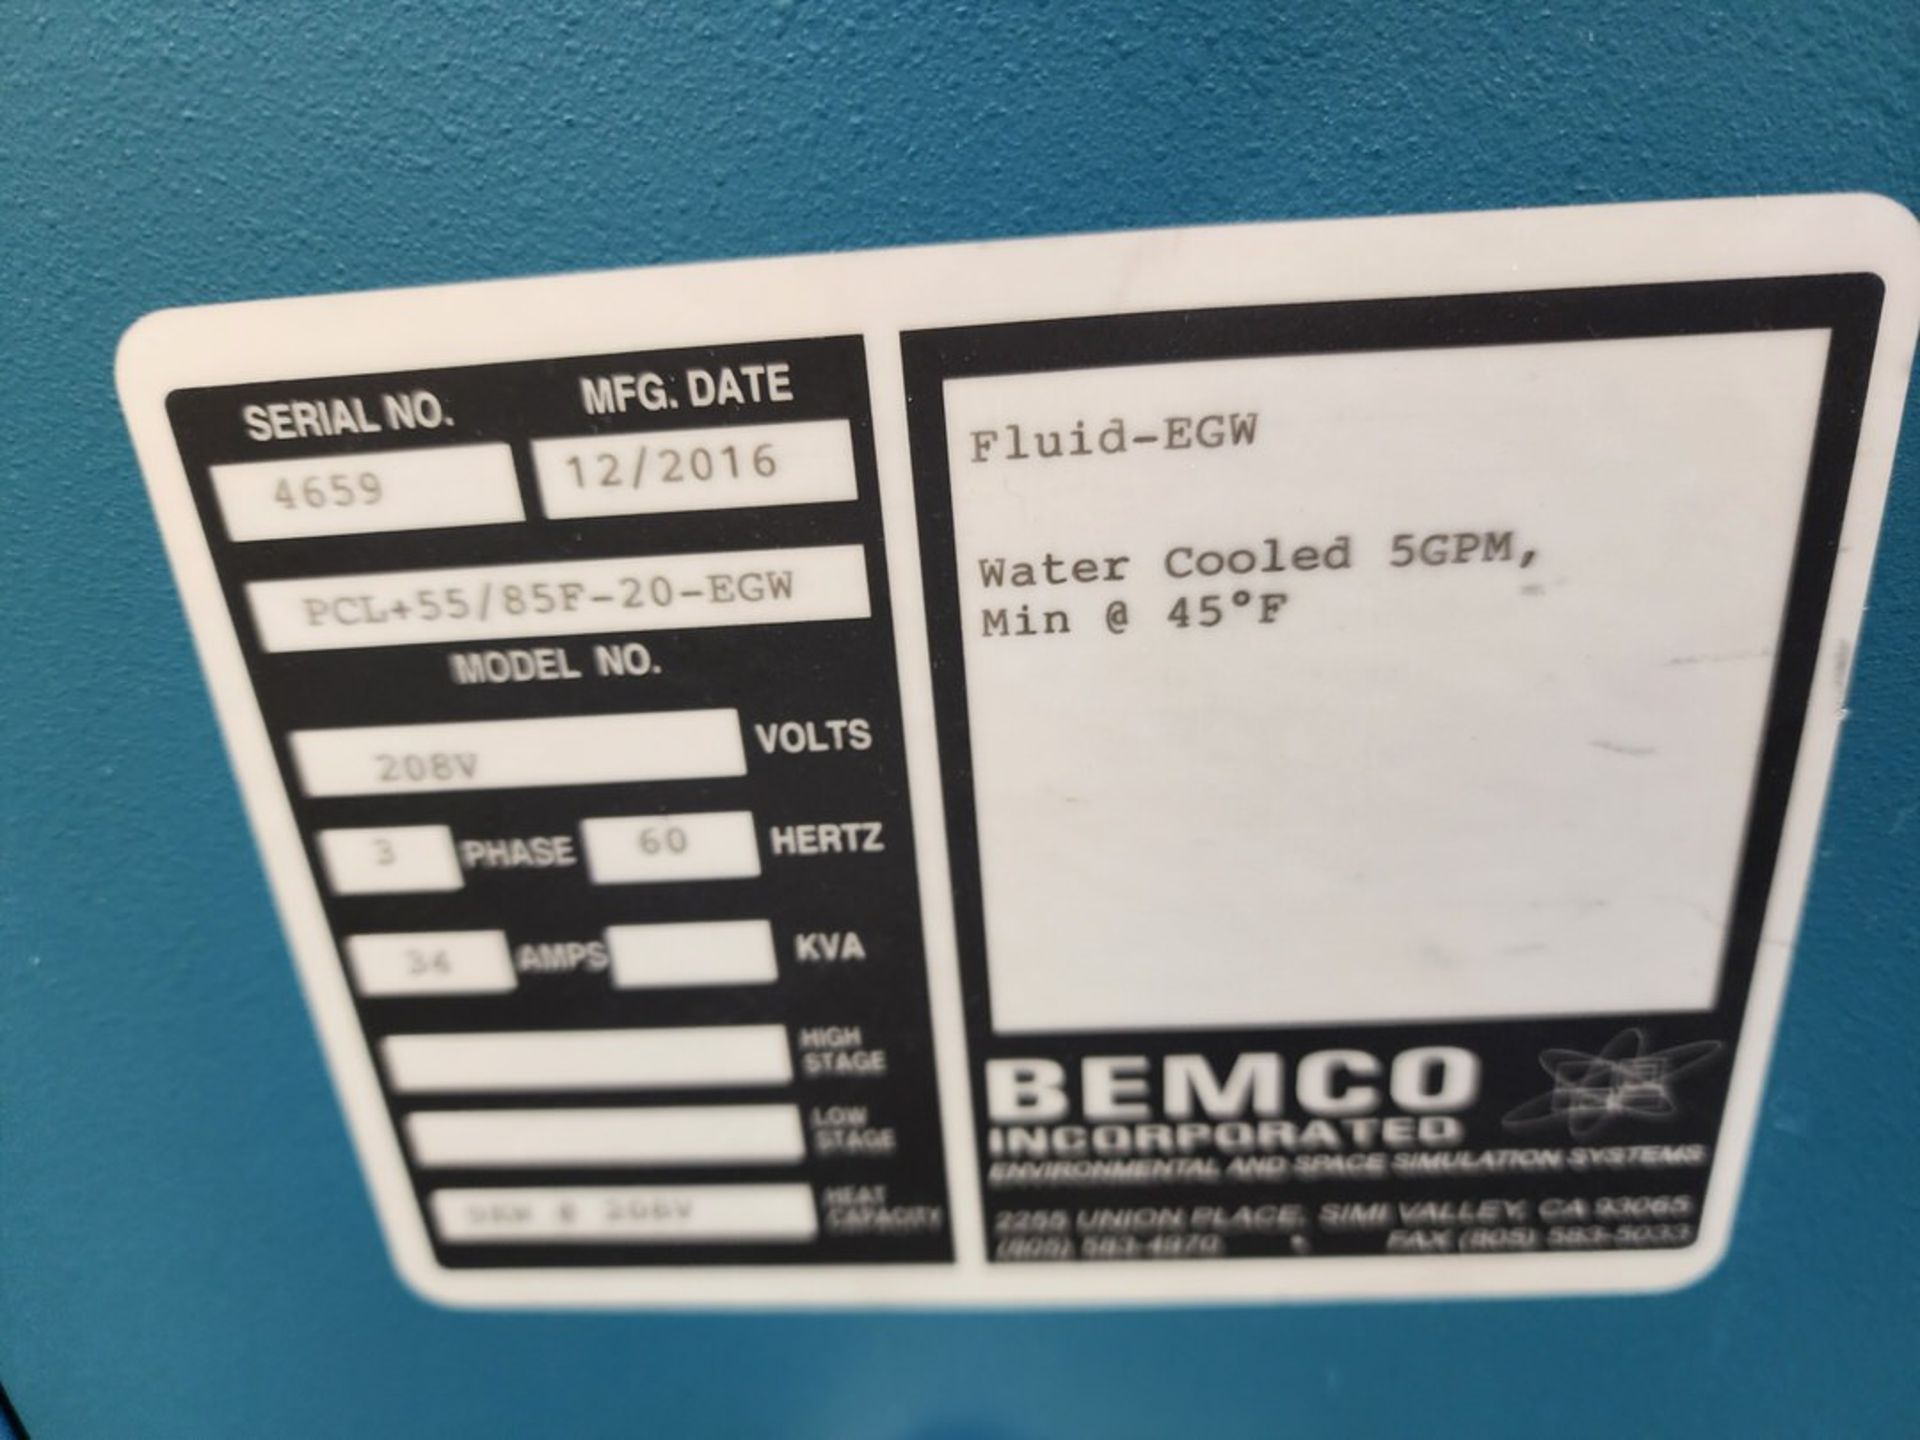 2016 Bemco Chiller 208V, 3PH, 60hZ, 41A - Image 6 of 6